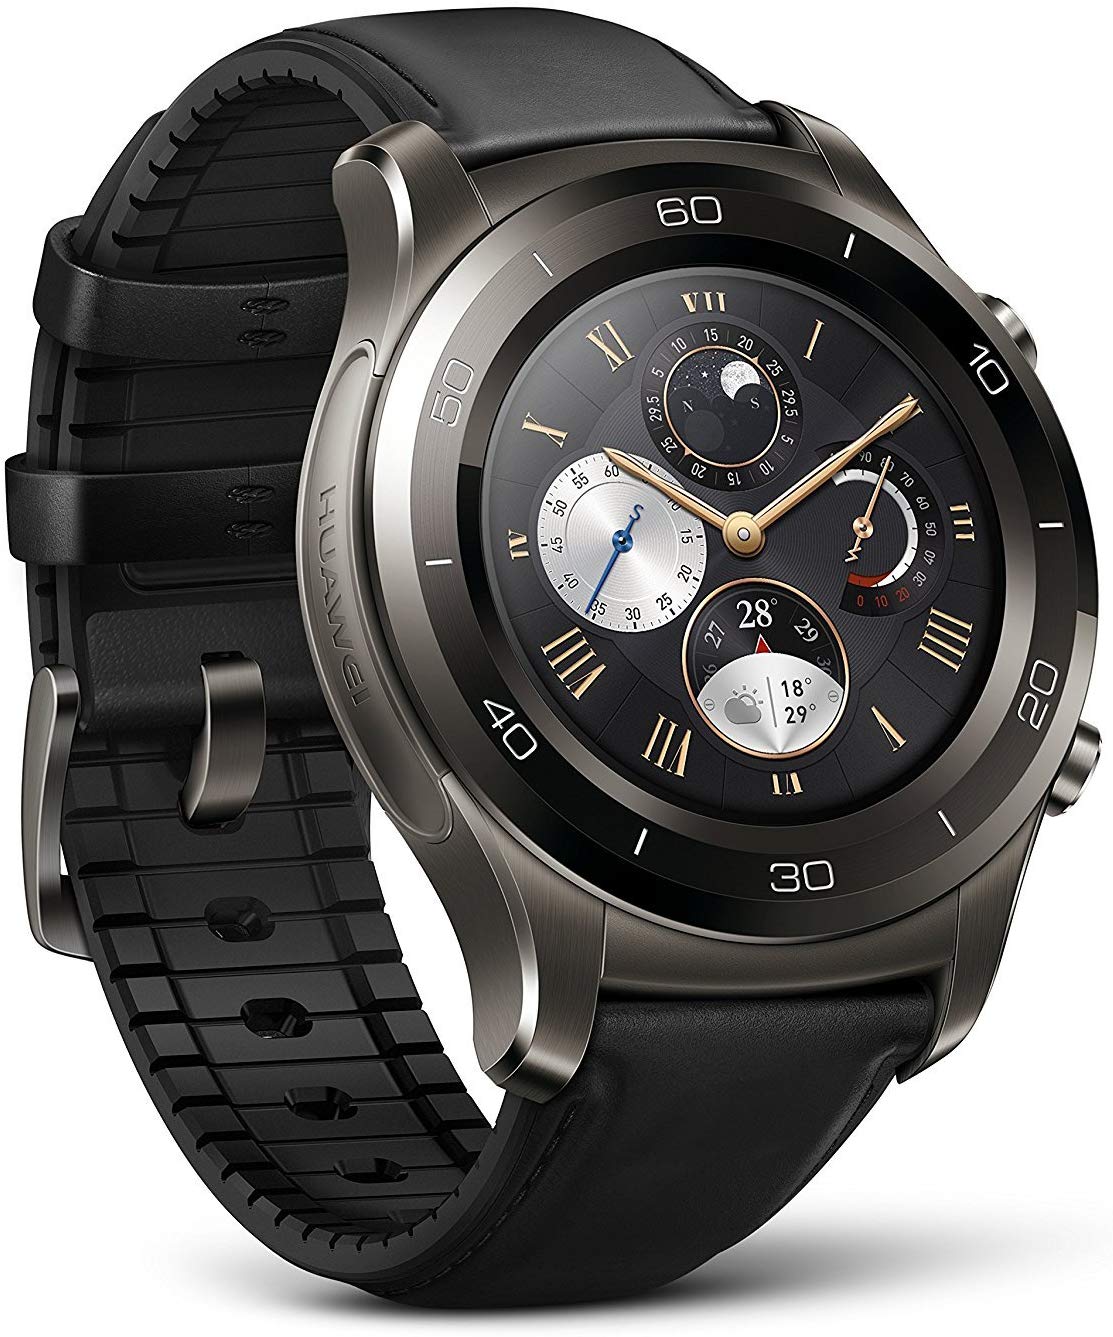 Huawei Watch 2 Classic Specs